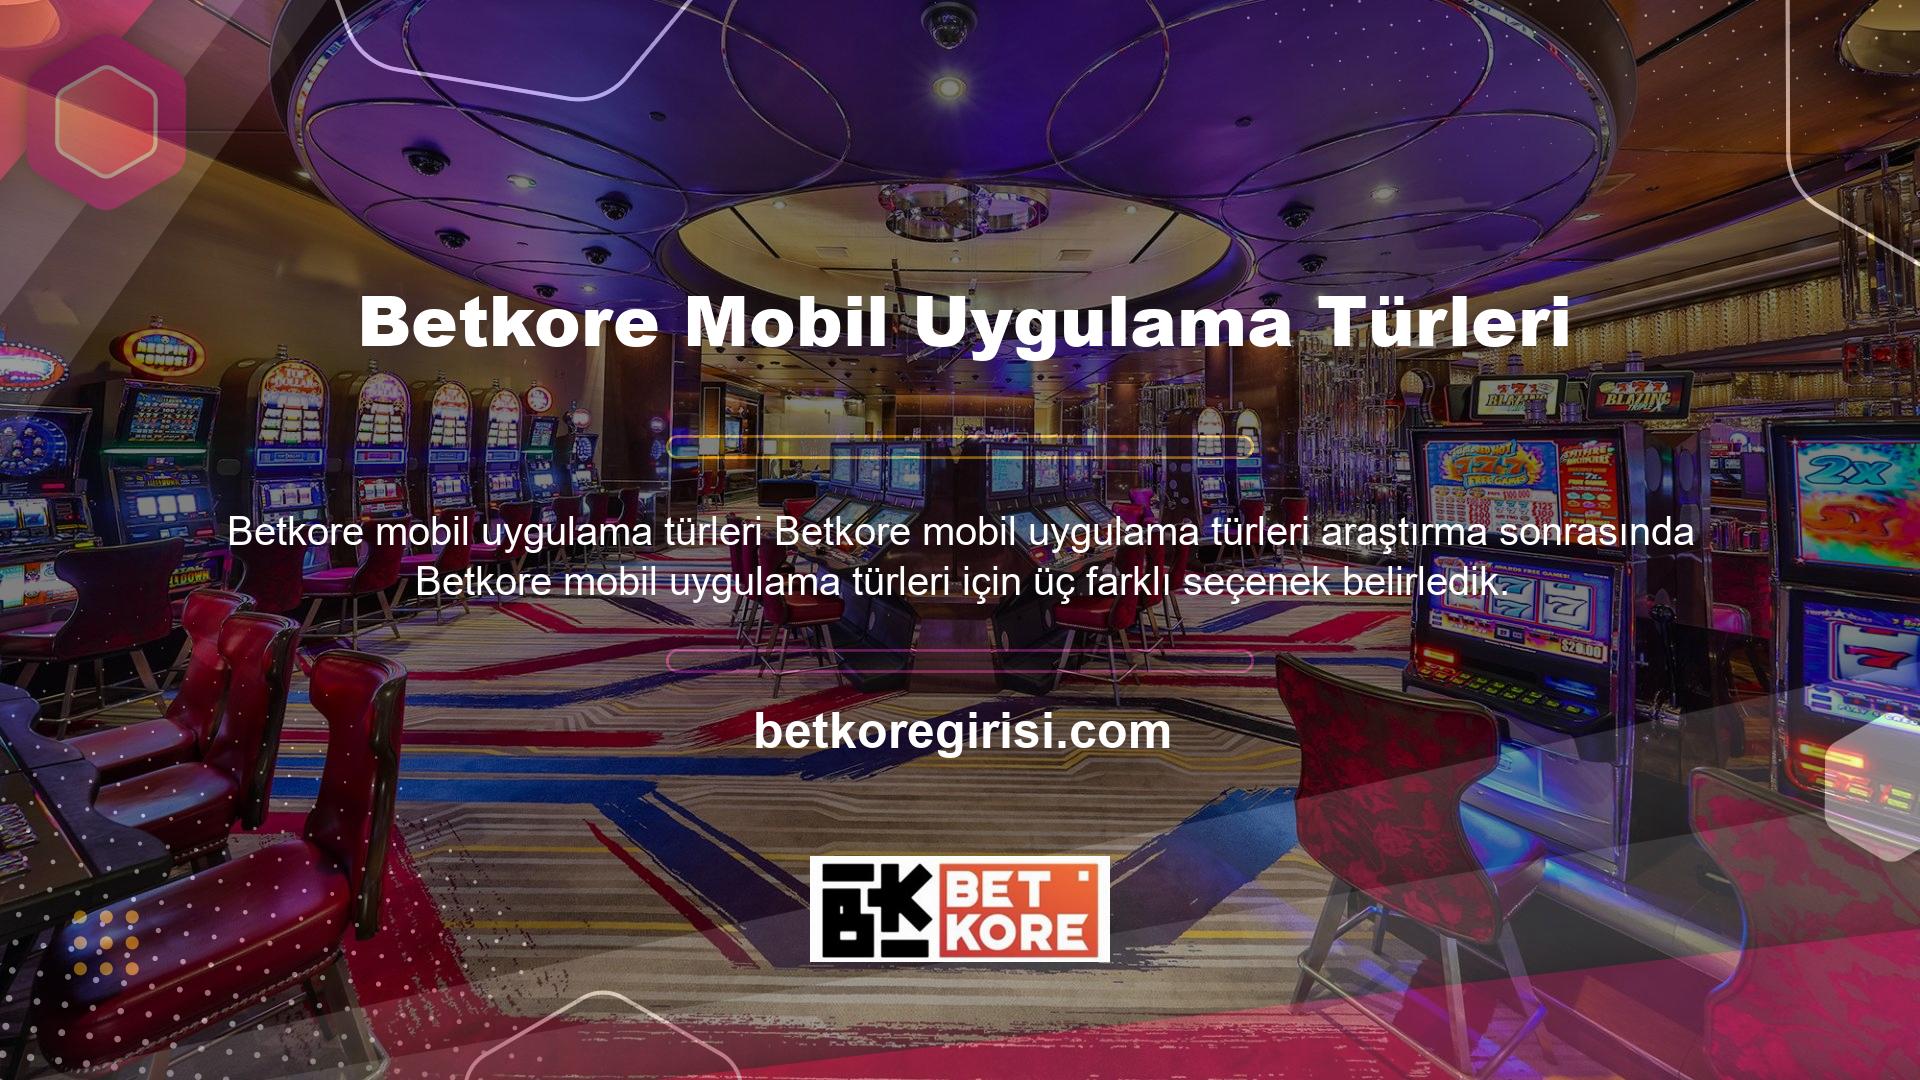 Betkore iPhone uygulaması, iOS işletim sistemine sahip cep telefonu sahibi kullanıcılara yöneliktir